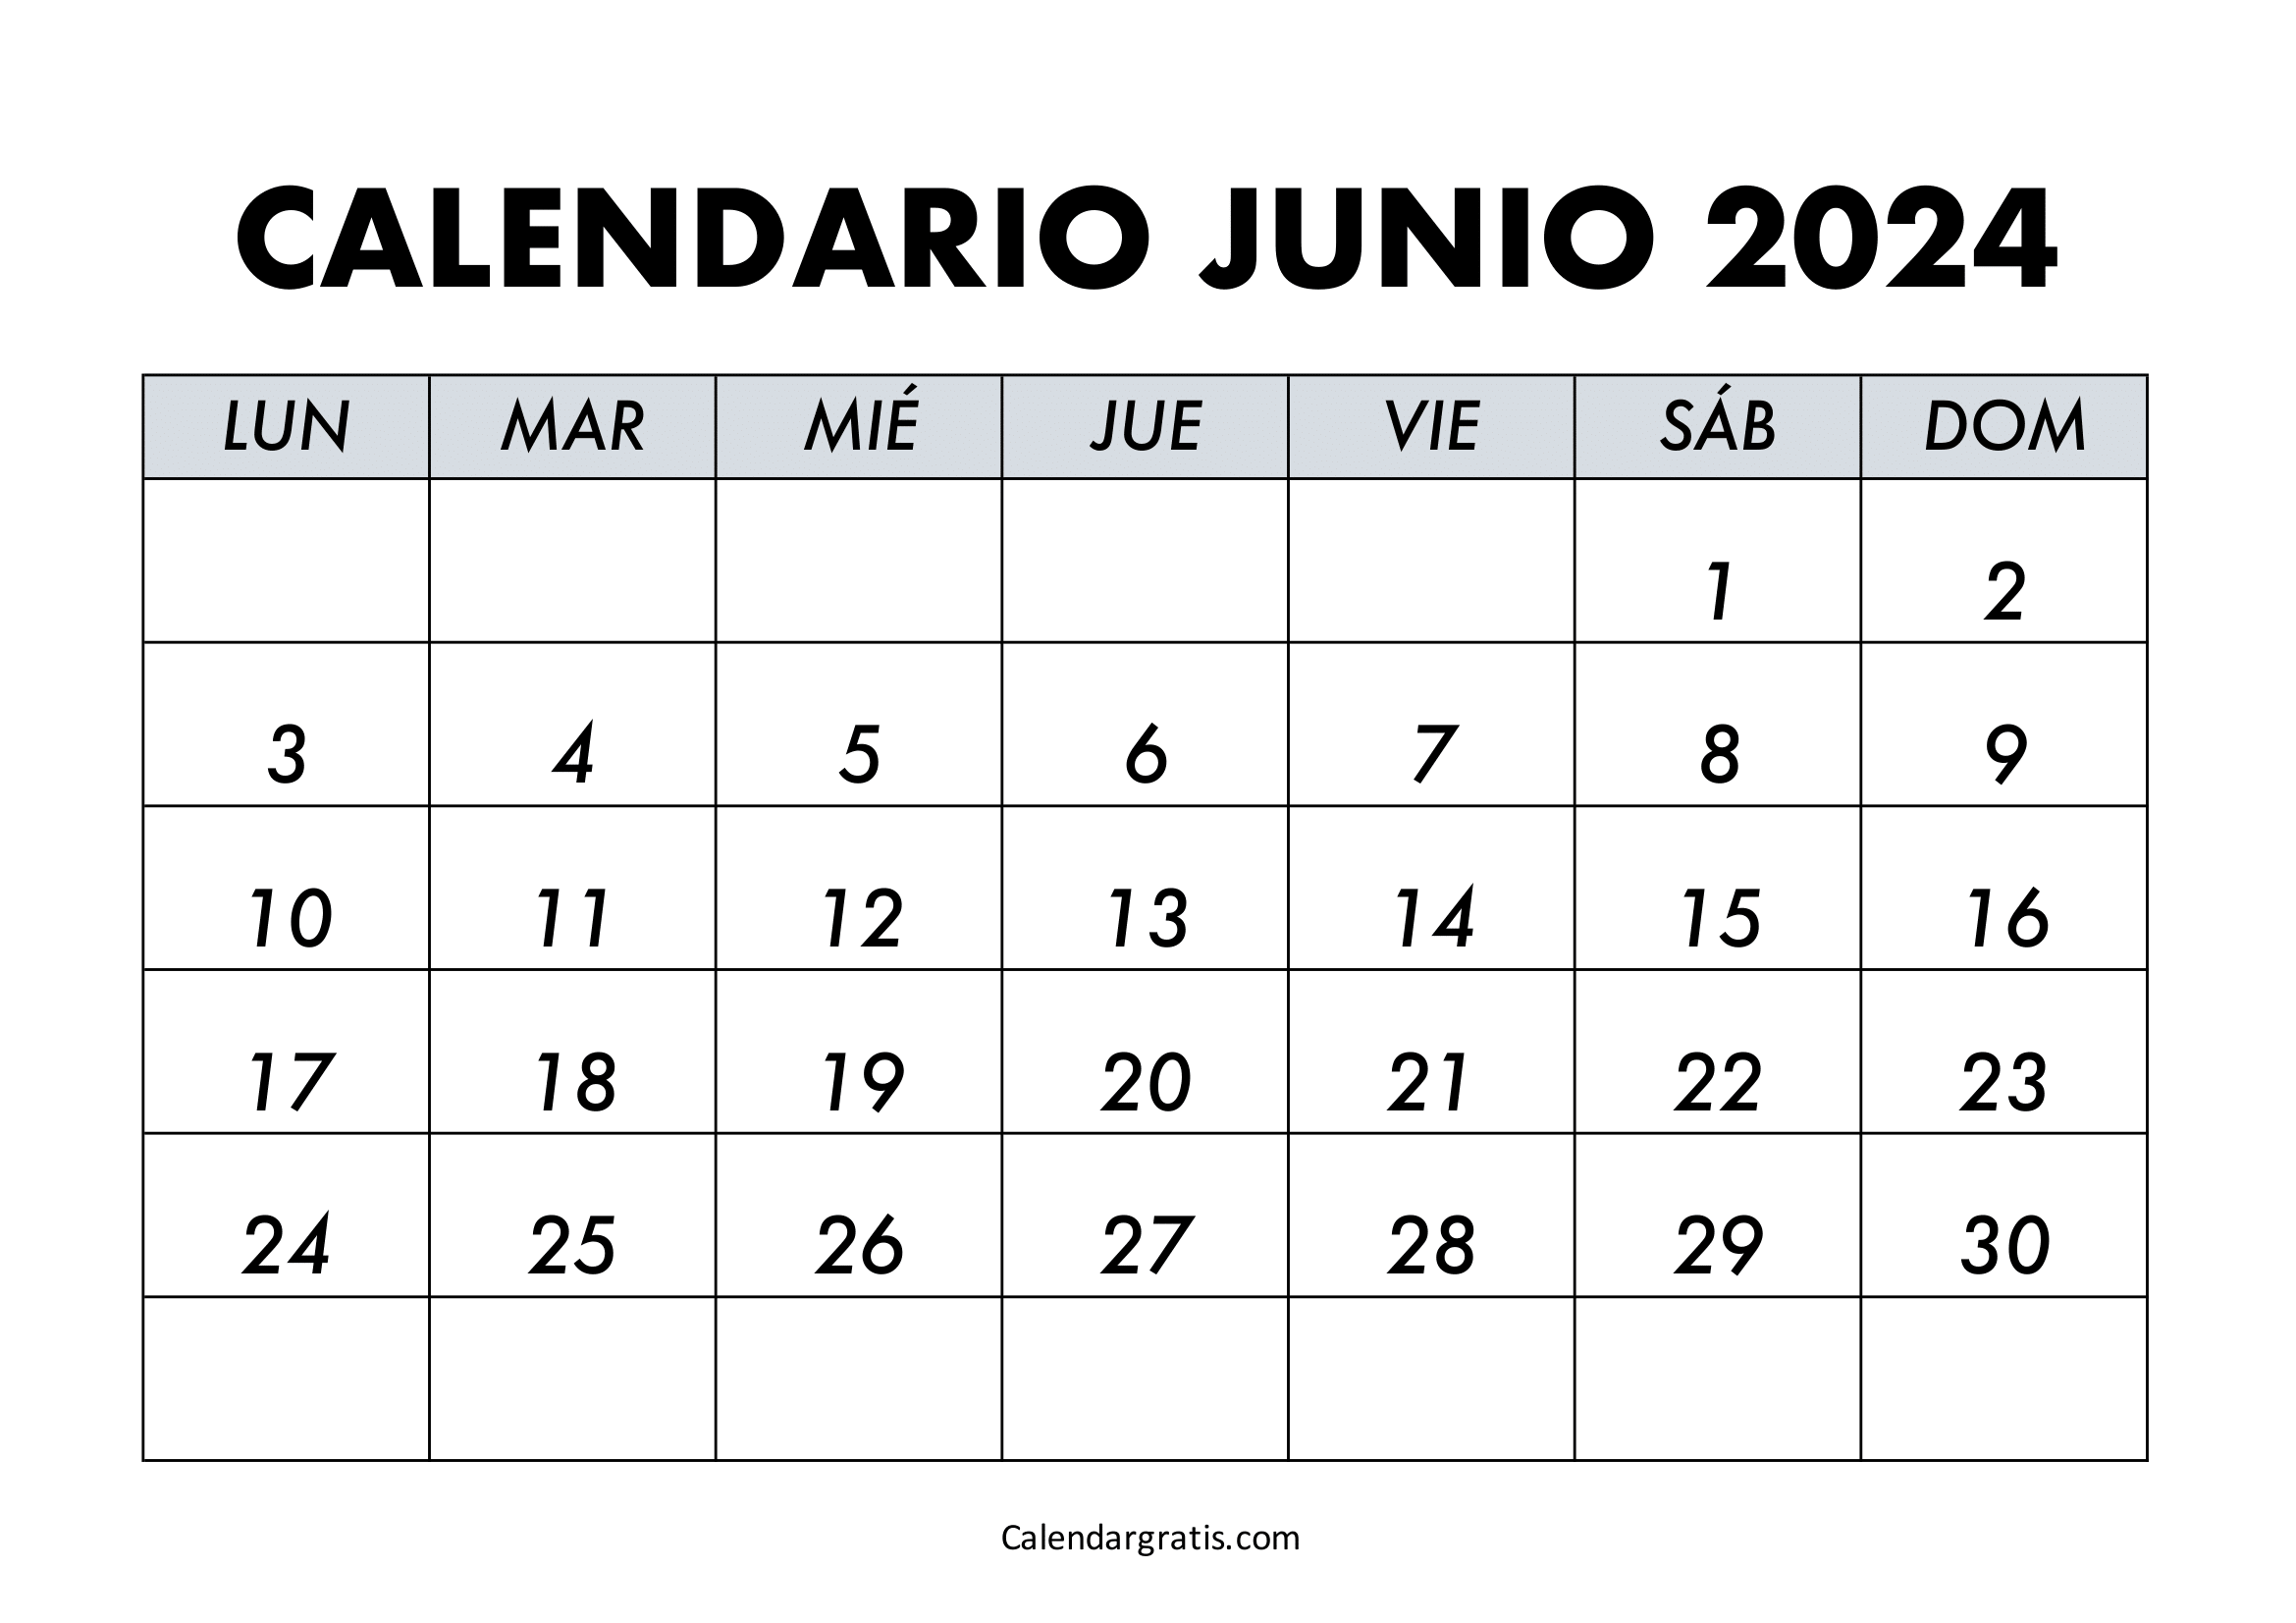 Calendario del mes de junio 2024 para imprimir gratis